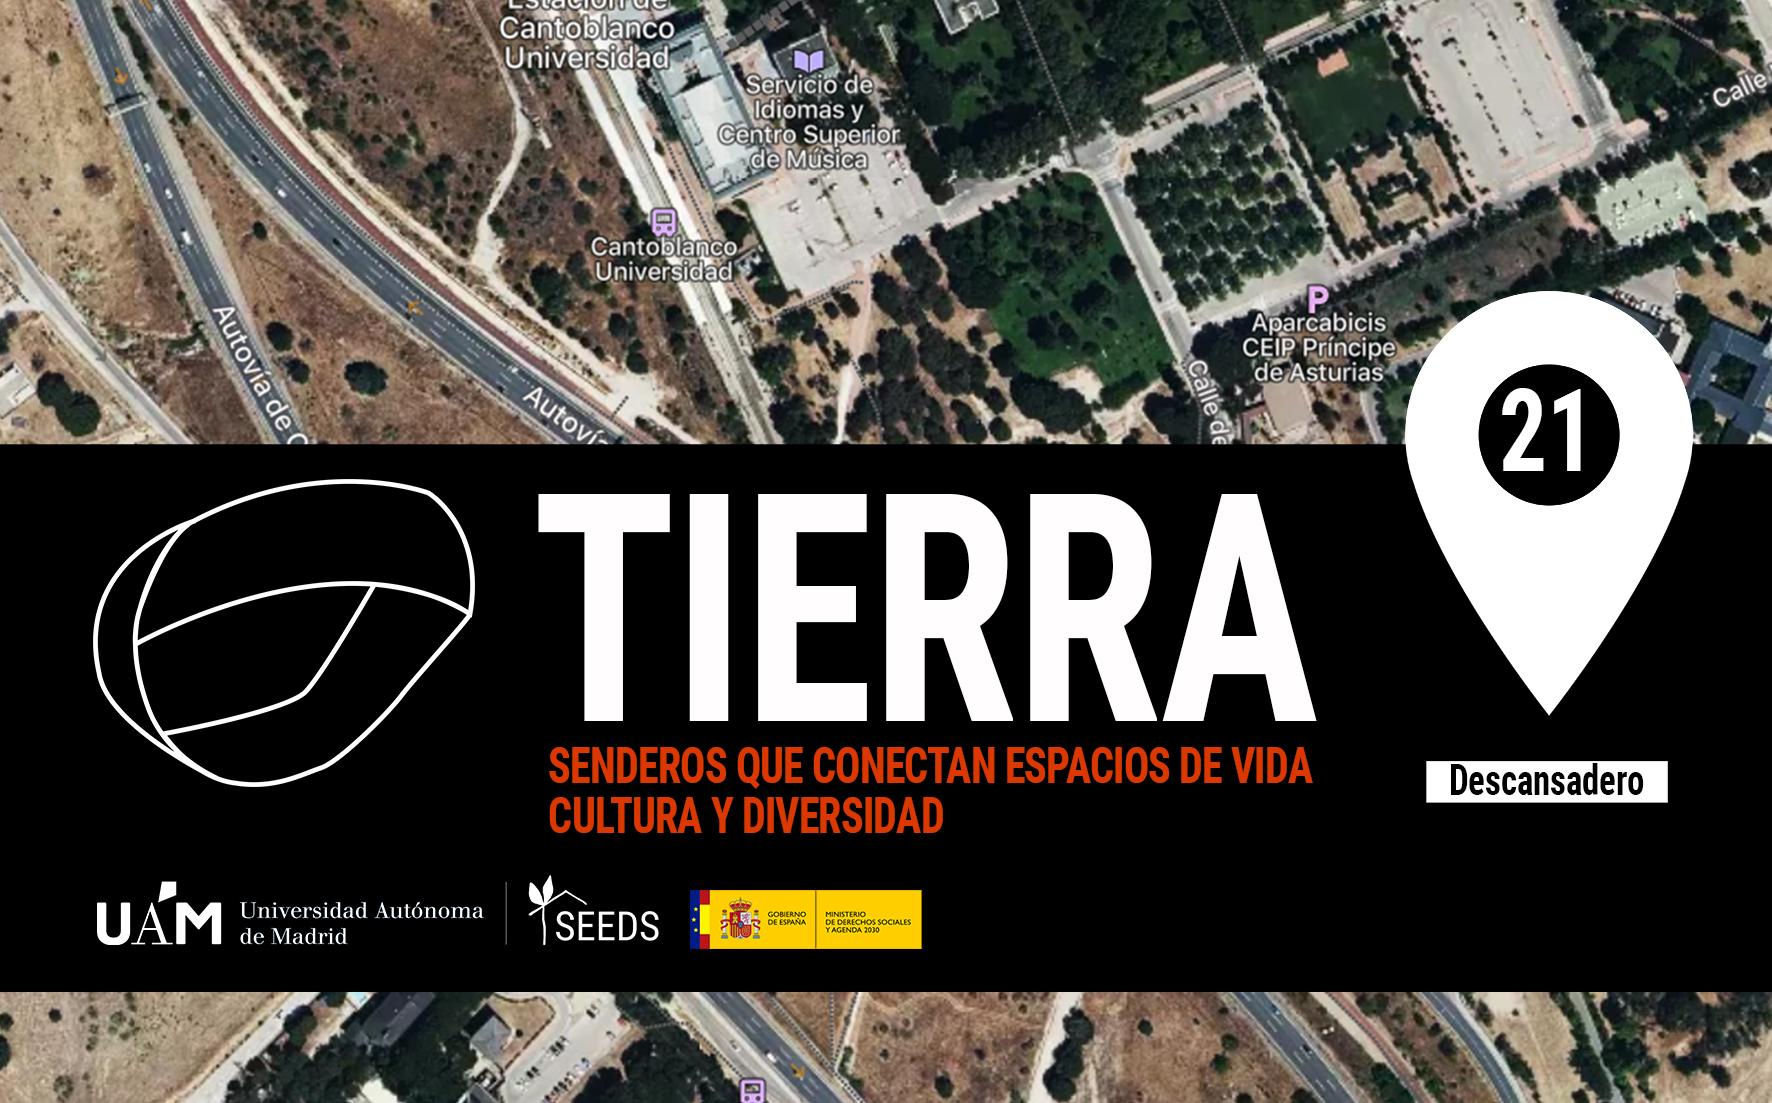 TIERRA: Descansadero 21_Senderos que conectan vida cultura diversidad